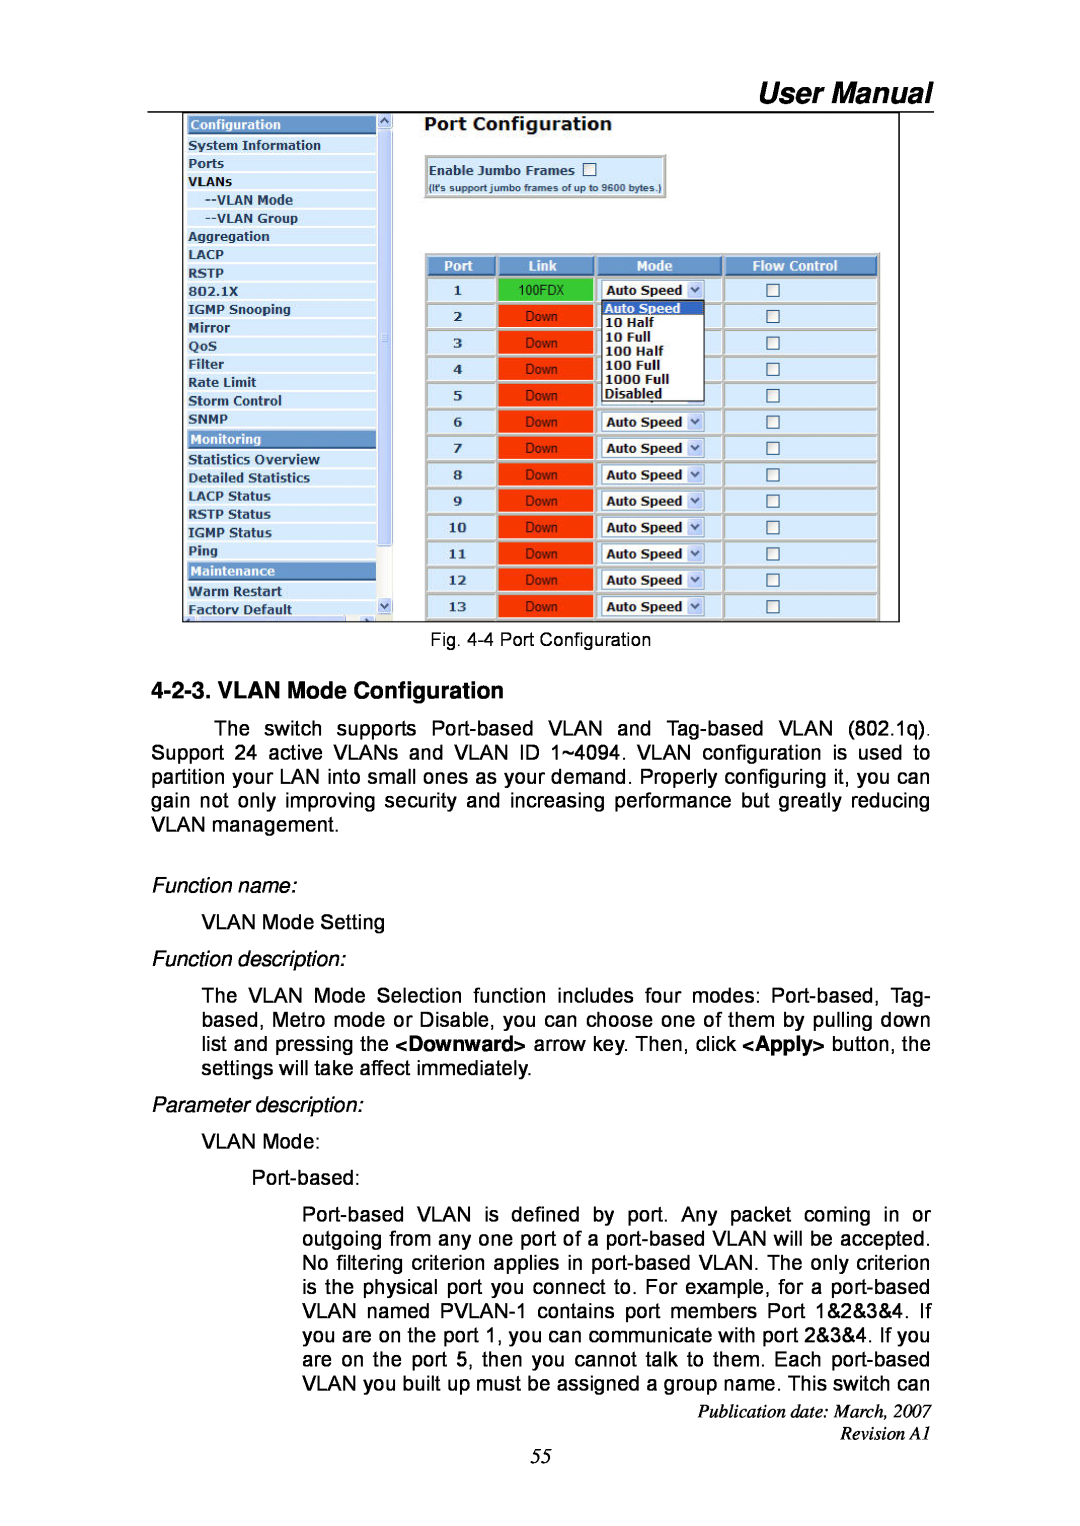 Ruby Tech GS-1224L manual VLAN Mode Configuration, User Manual, Function name, Function description, Parameter description 